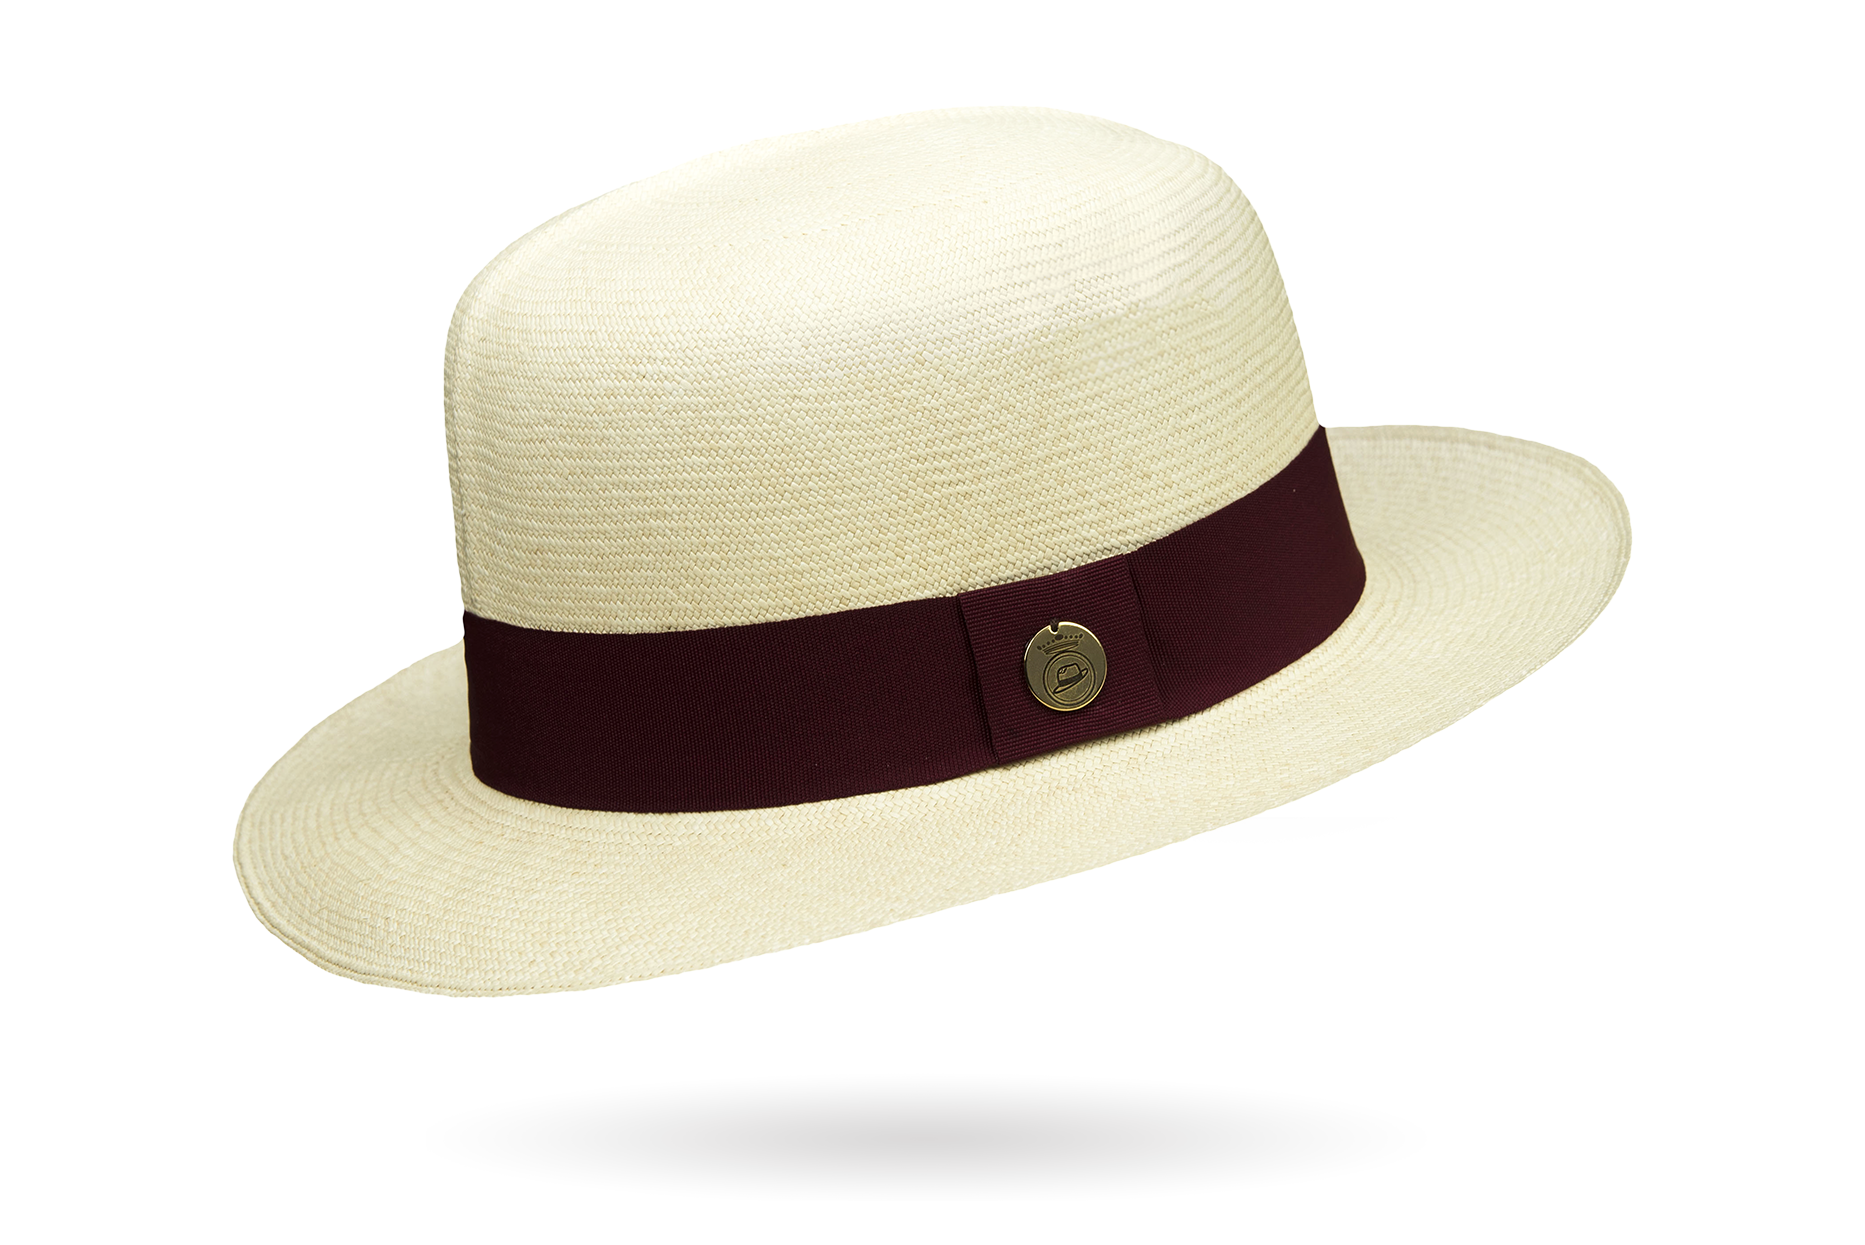 Prescious Extrafino Ii Montecristi Hat Optimo Creased Crown - Grade 20-22 54 Cm / Bordeaux Hatband